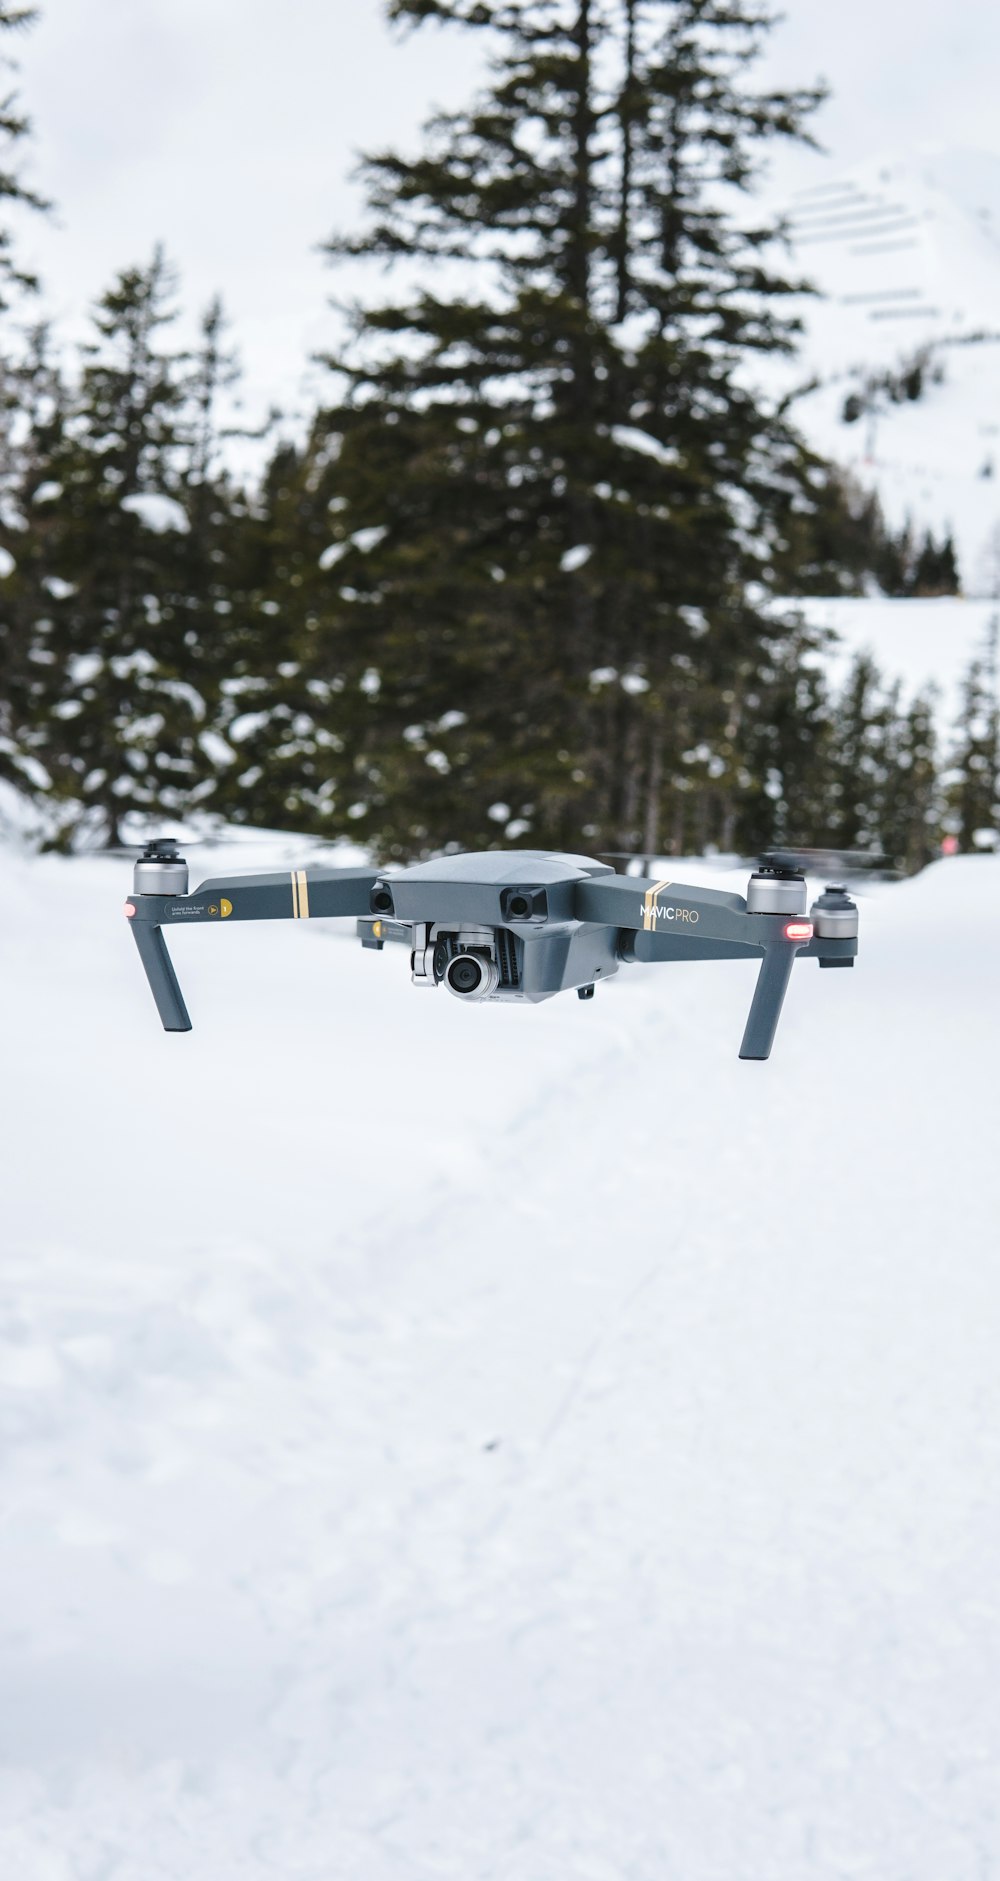 grauer fliegender Quadrocopter in der Nähe von Bäumen mit Schnee